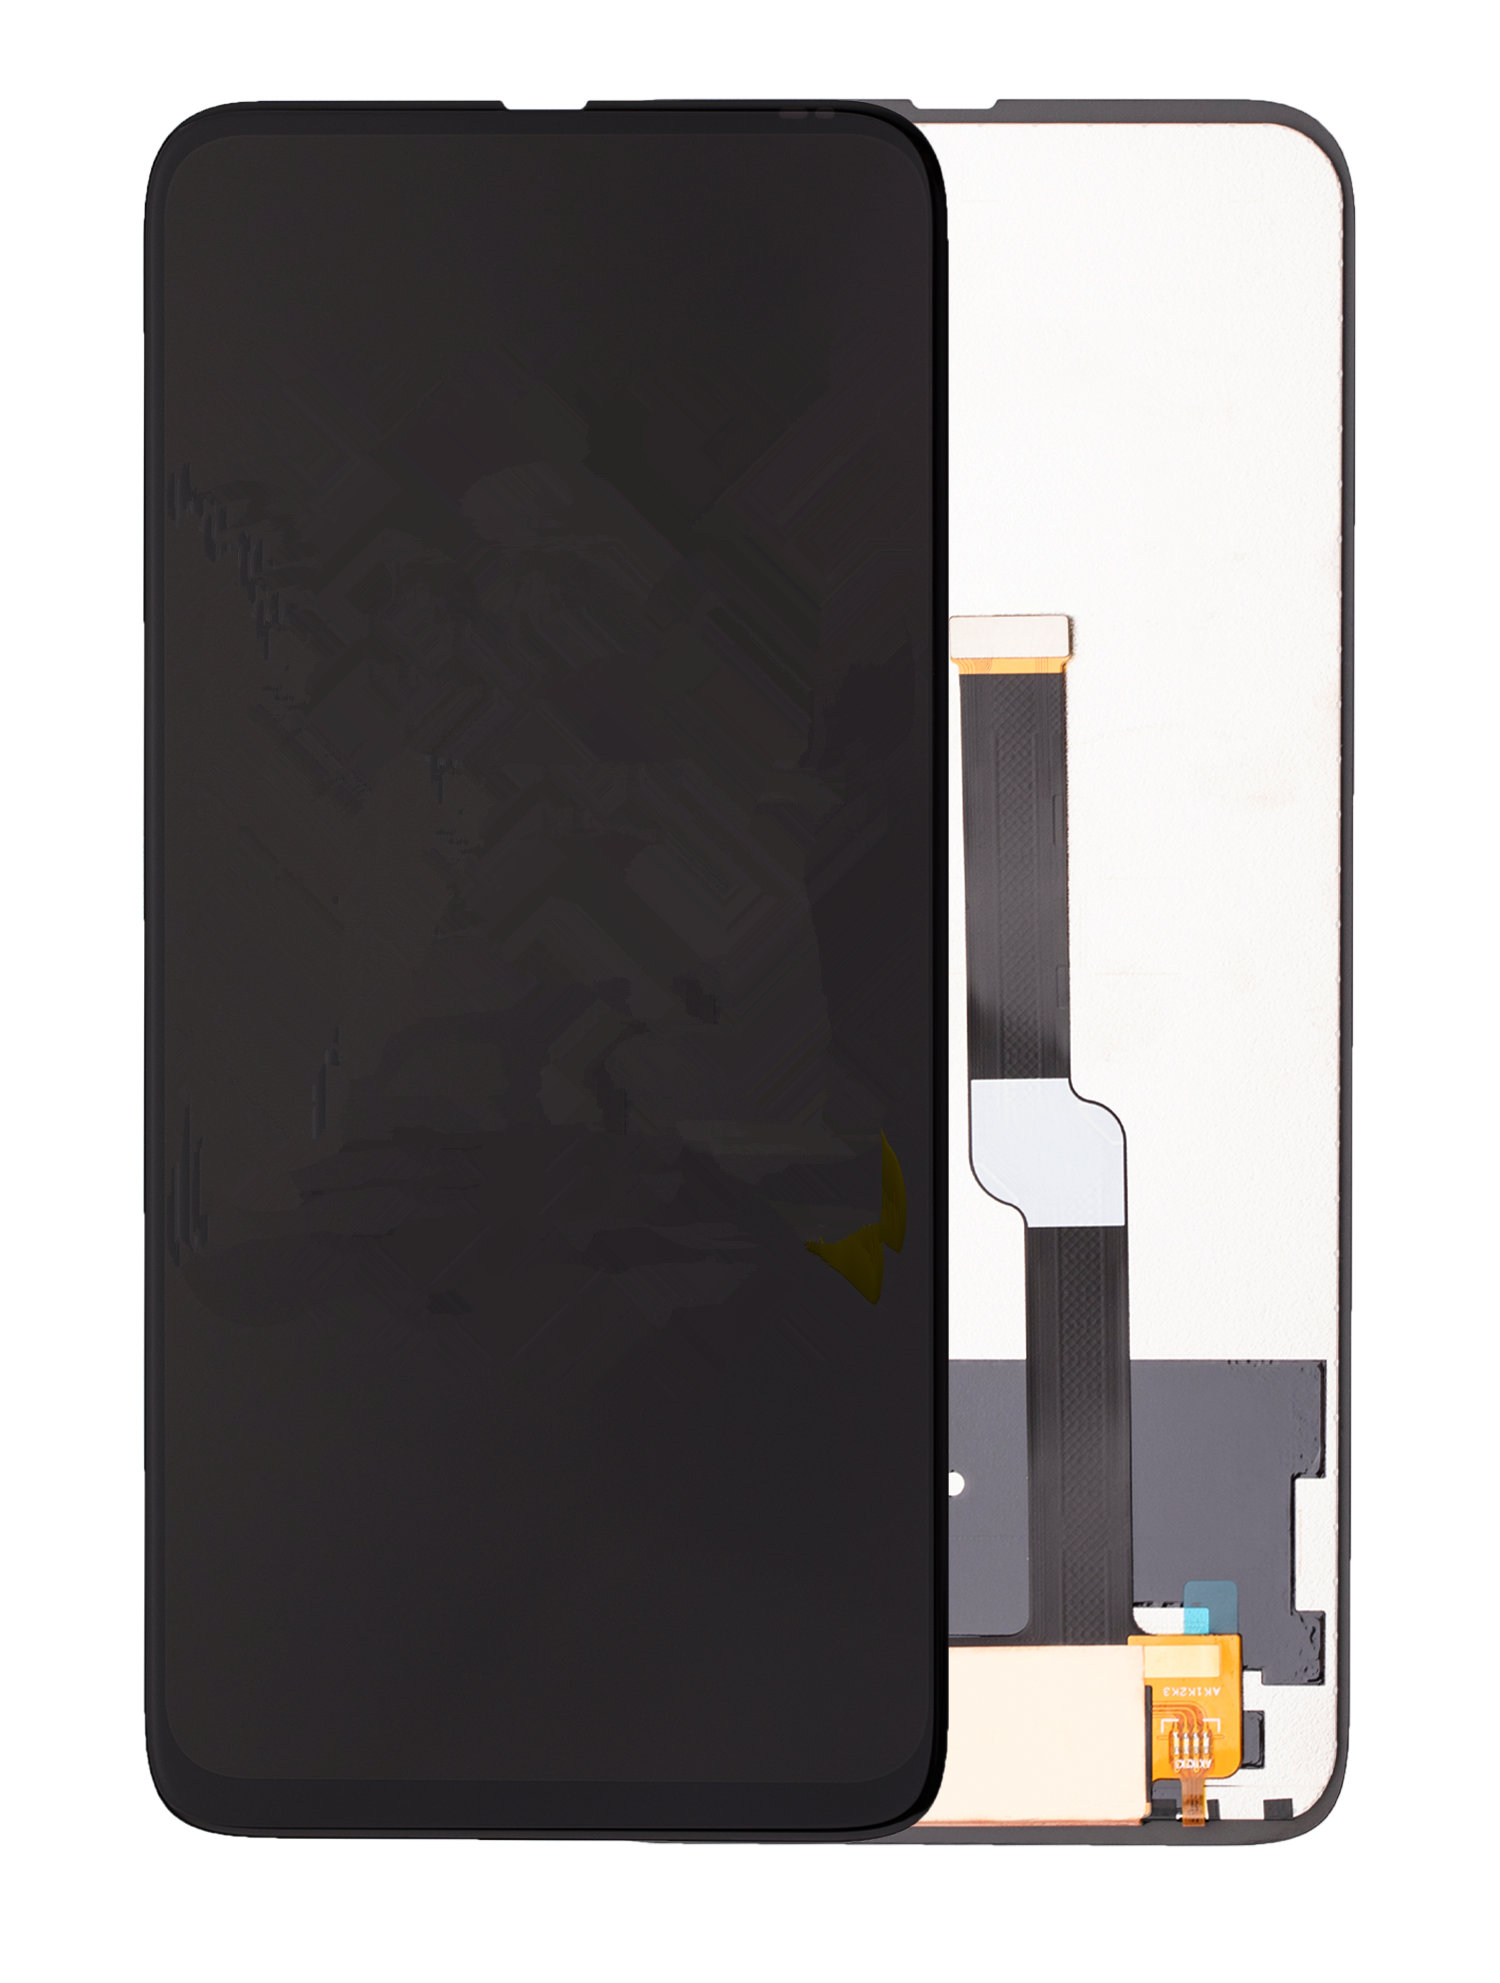 Motorola One Series üçün Çərçivəsiz LCD Touch Displey Digitizer - 3